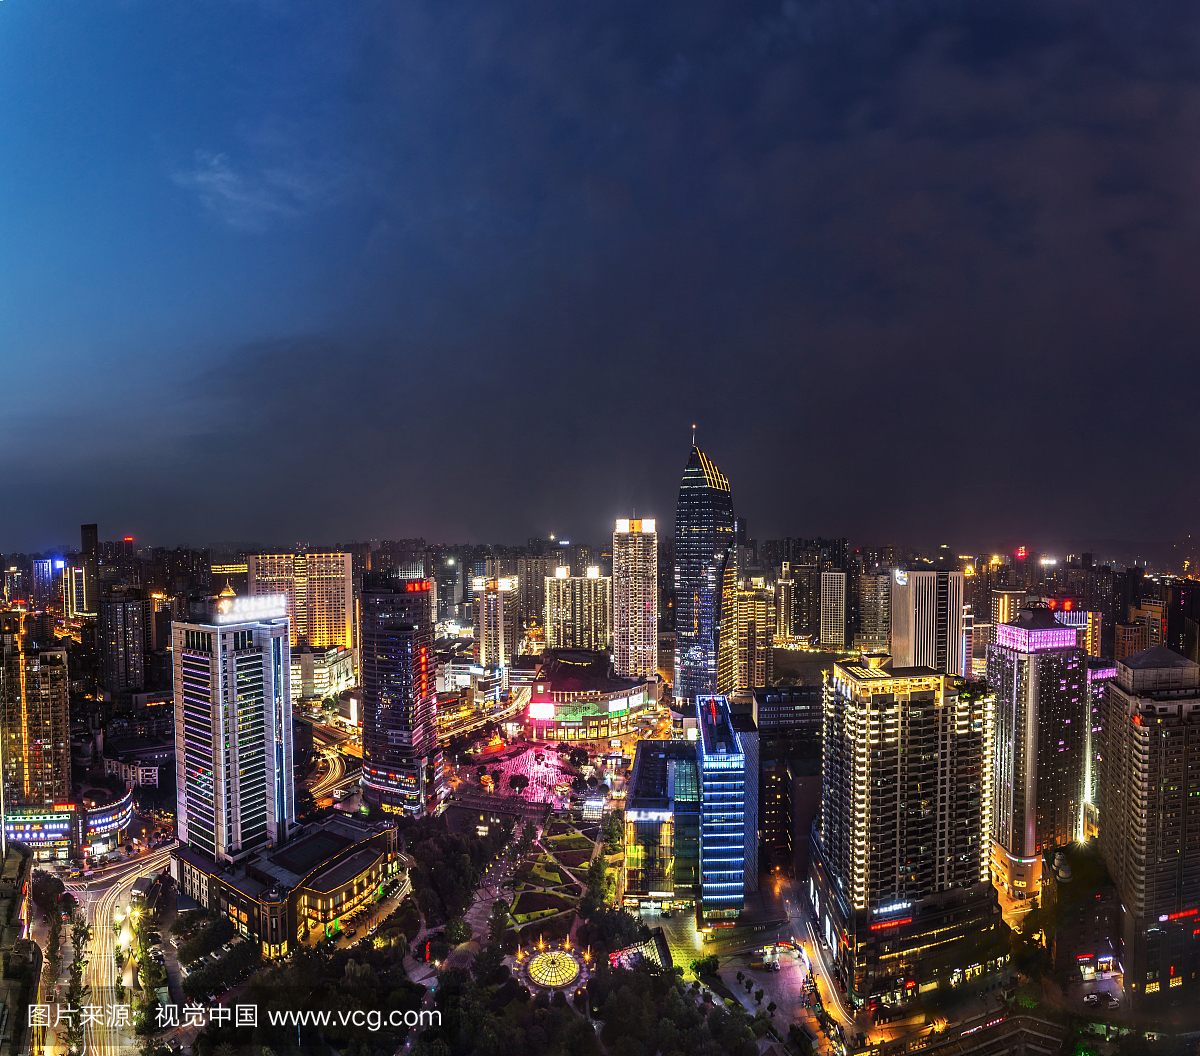 中国重庆观音桥商圈繁华的都市夜景